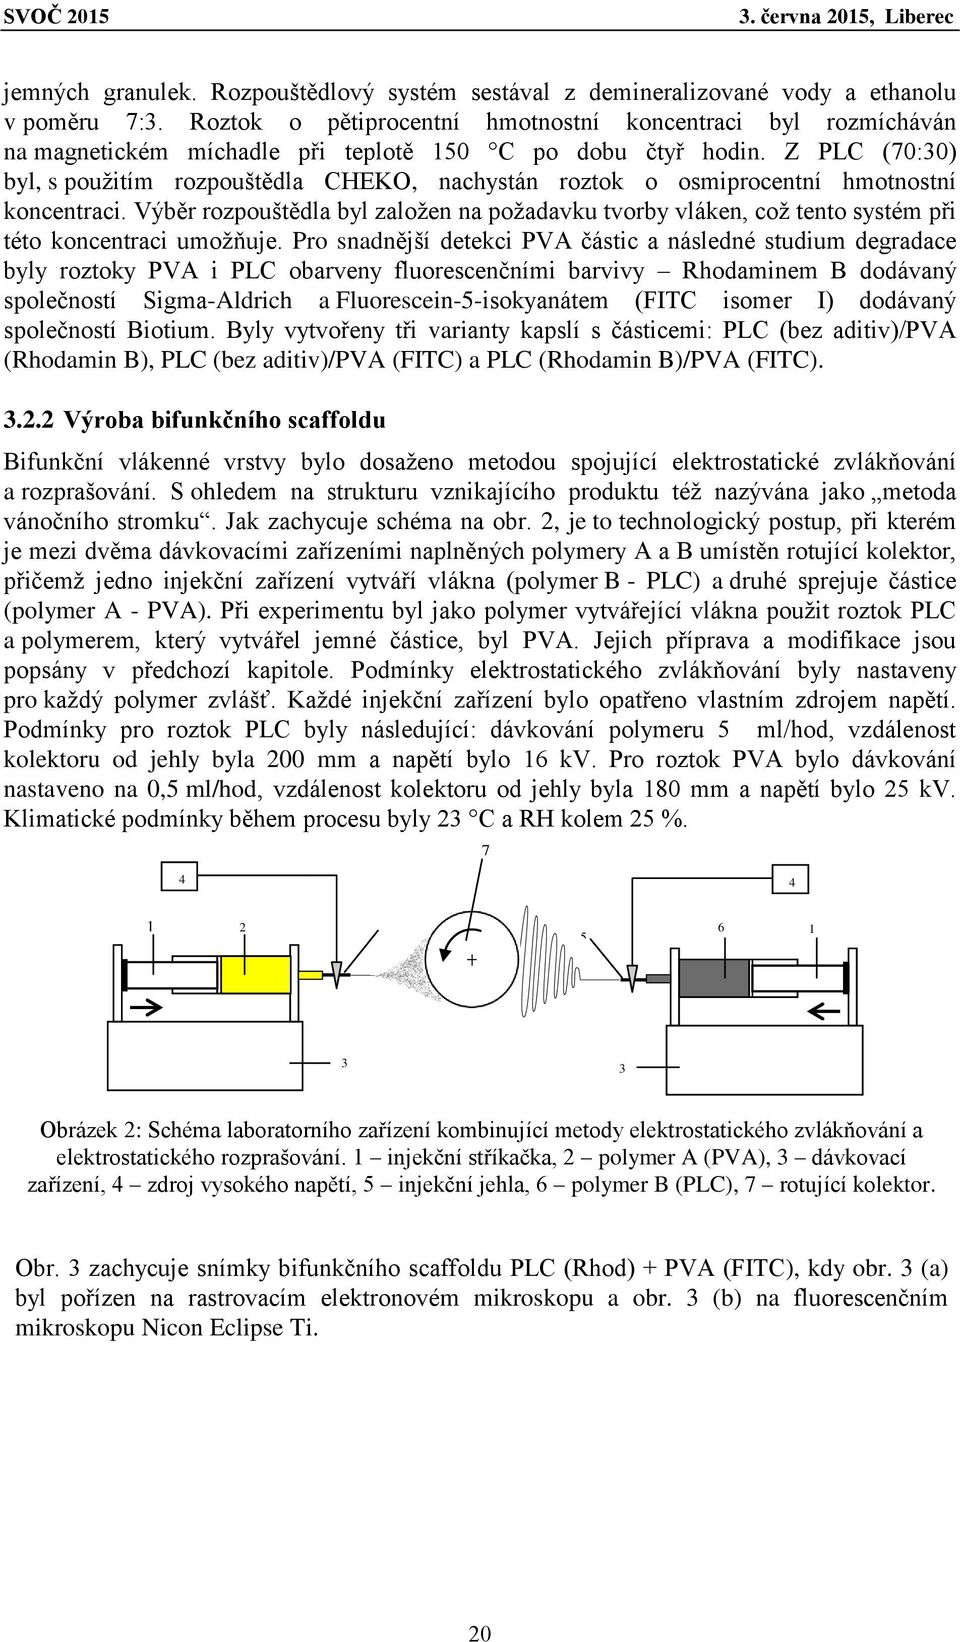 Z PLC (70:30) byl, s použitím rozpouštědla CHEKO, nachystán roztok o osmiprocentní hmotnostní koncentraci.